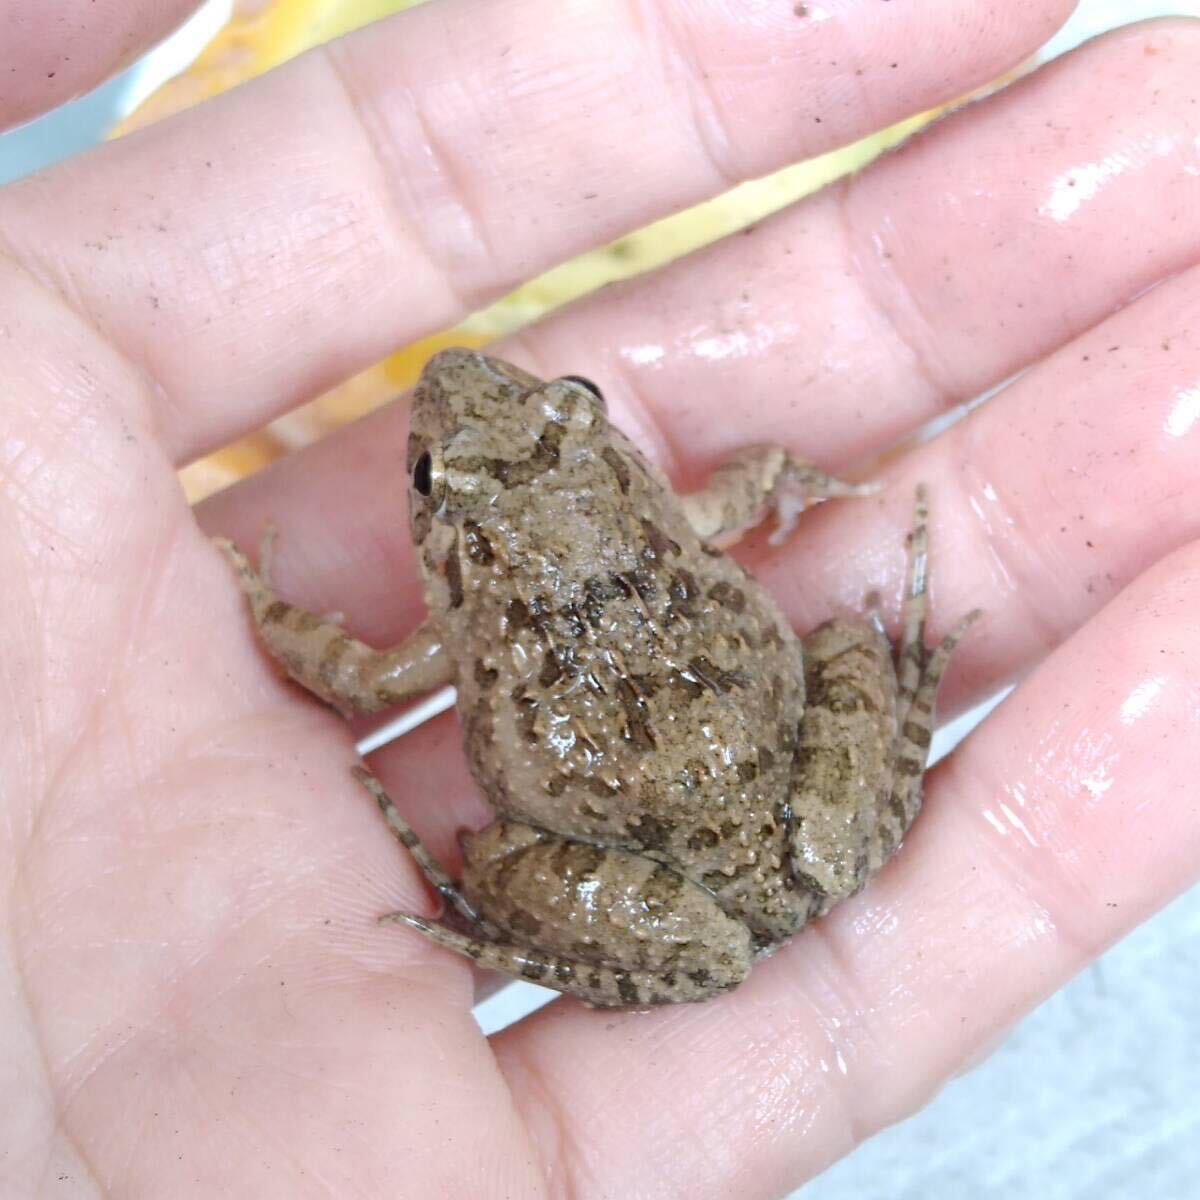 [M*20 pcs +α] bait bait for frog . bait approximately 3~4cmnmaga L feed for .. taking kerolium reptiles .. bait snake. bait ... bait CB